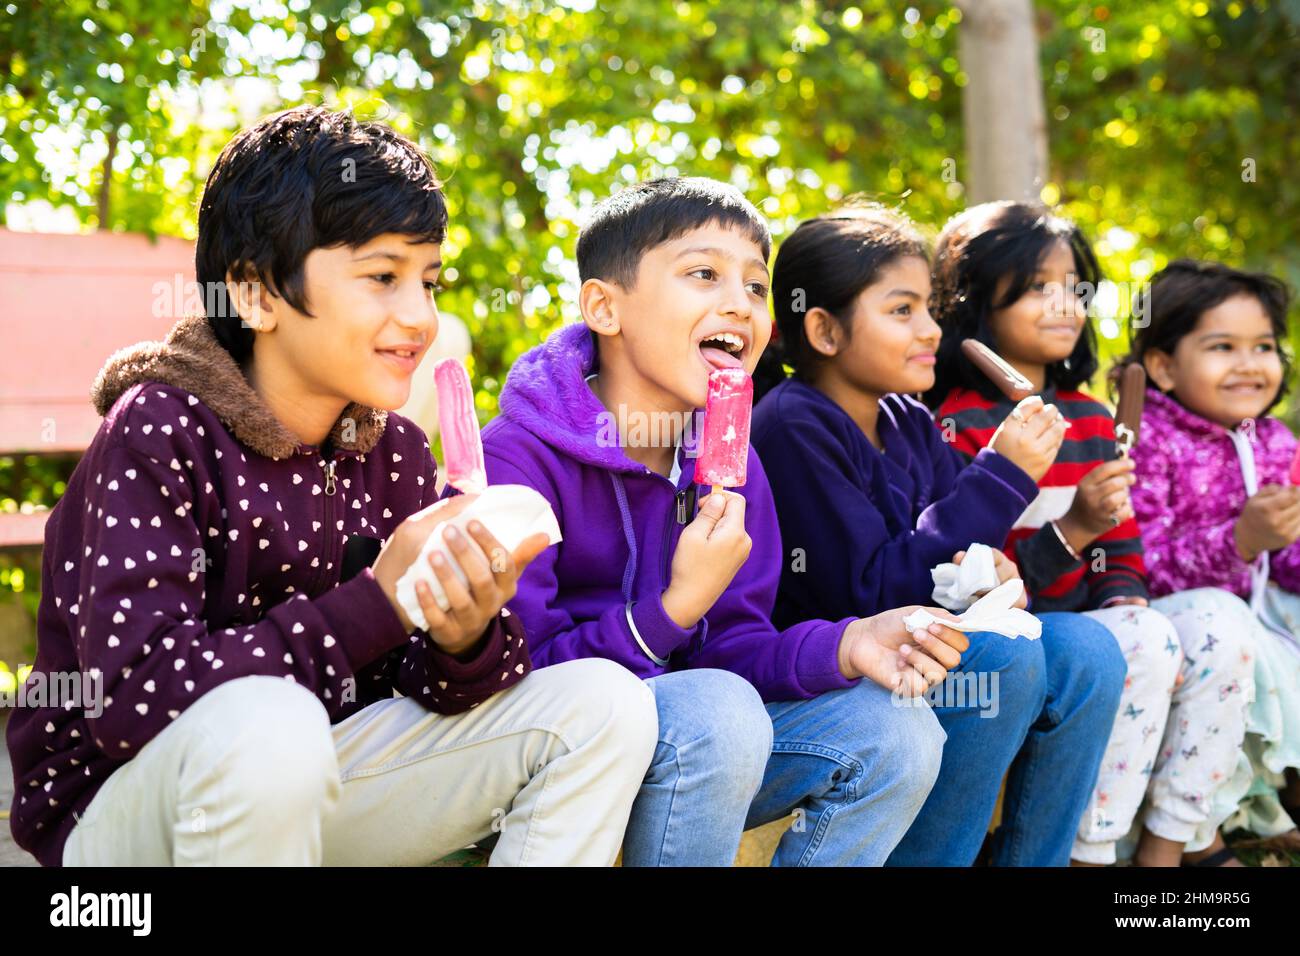 Indische Teenager-Kinder genießen Eis im Park - Konzept der Entspannung, Freundschaft, gesunde Ernährung und genießen Winterurlaub. Stockfoto